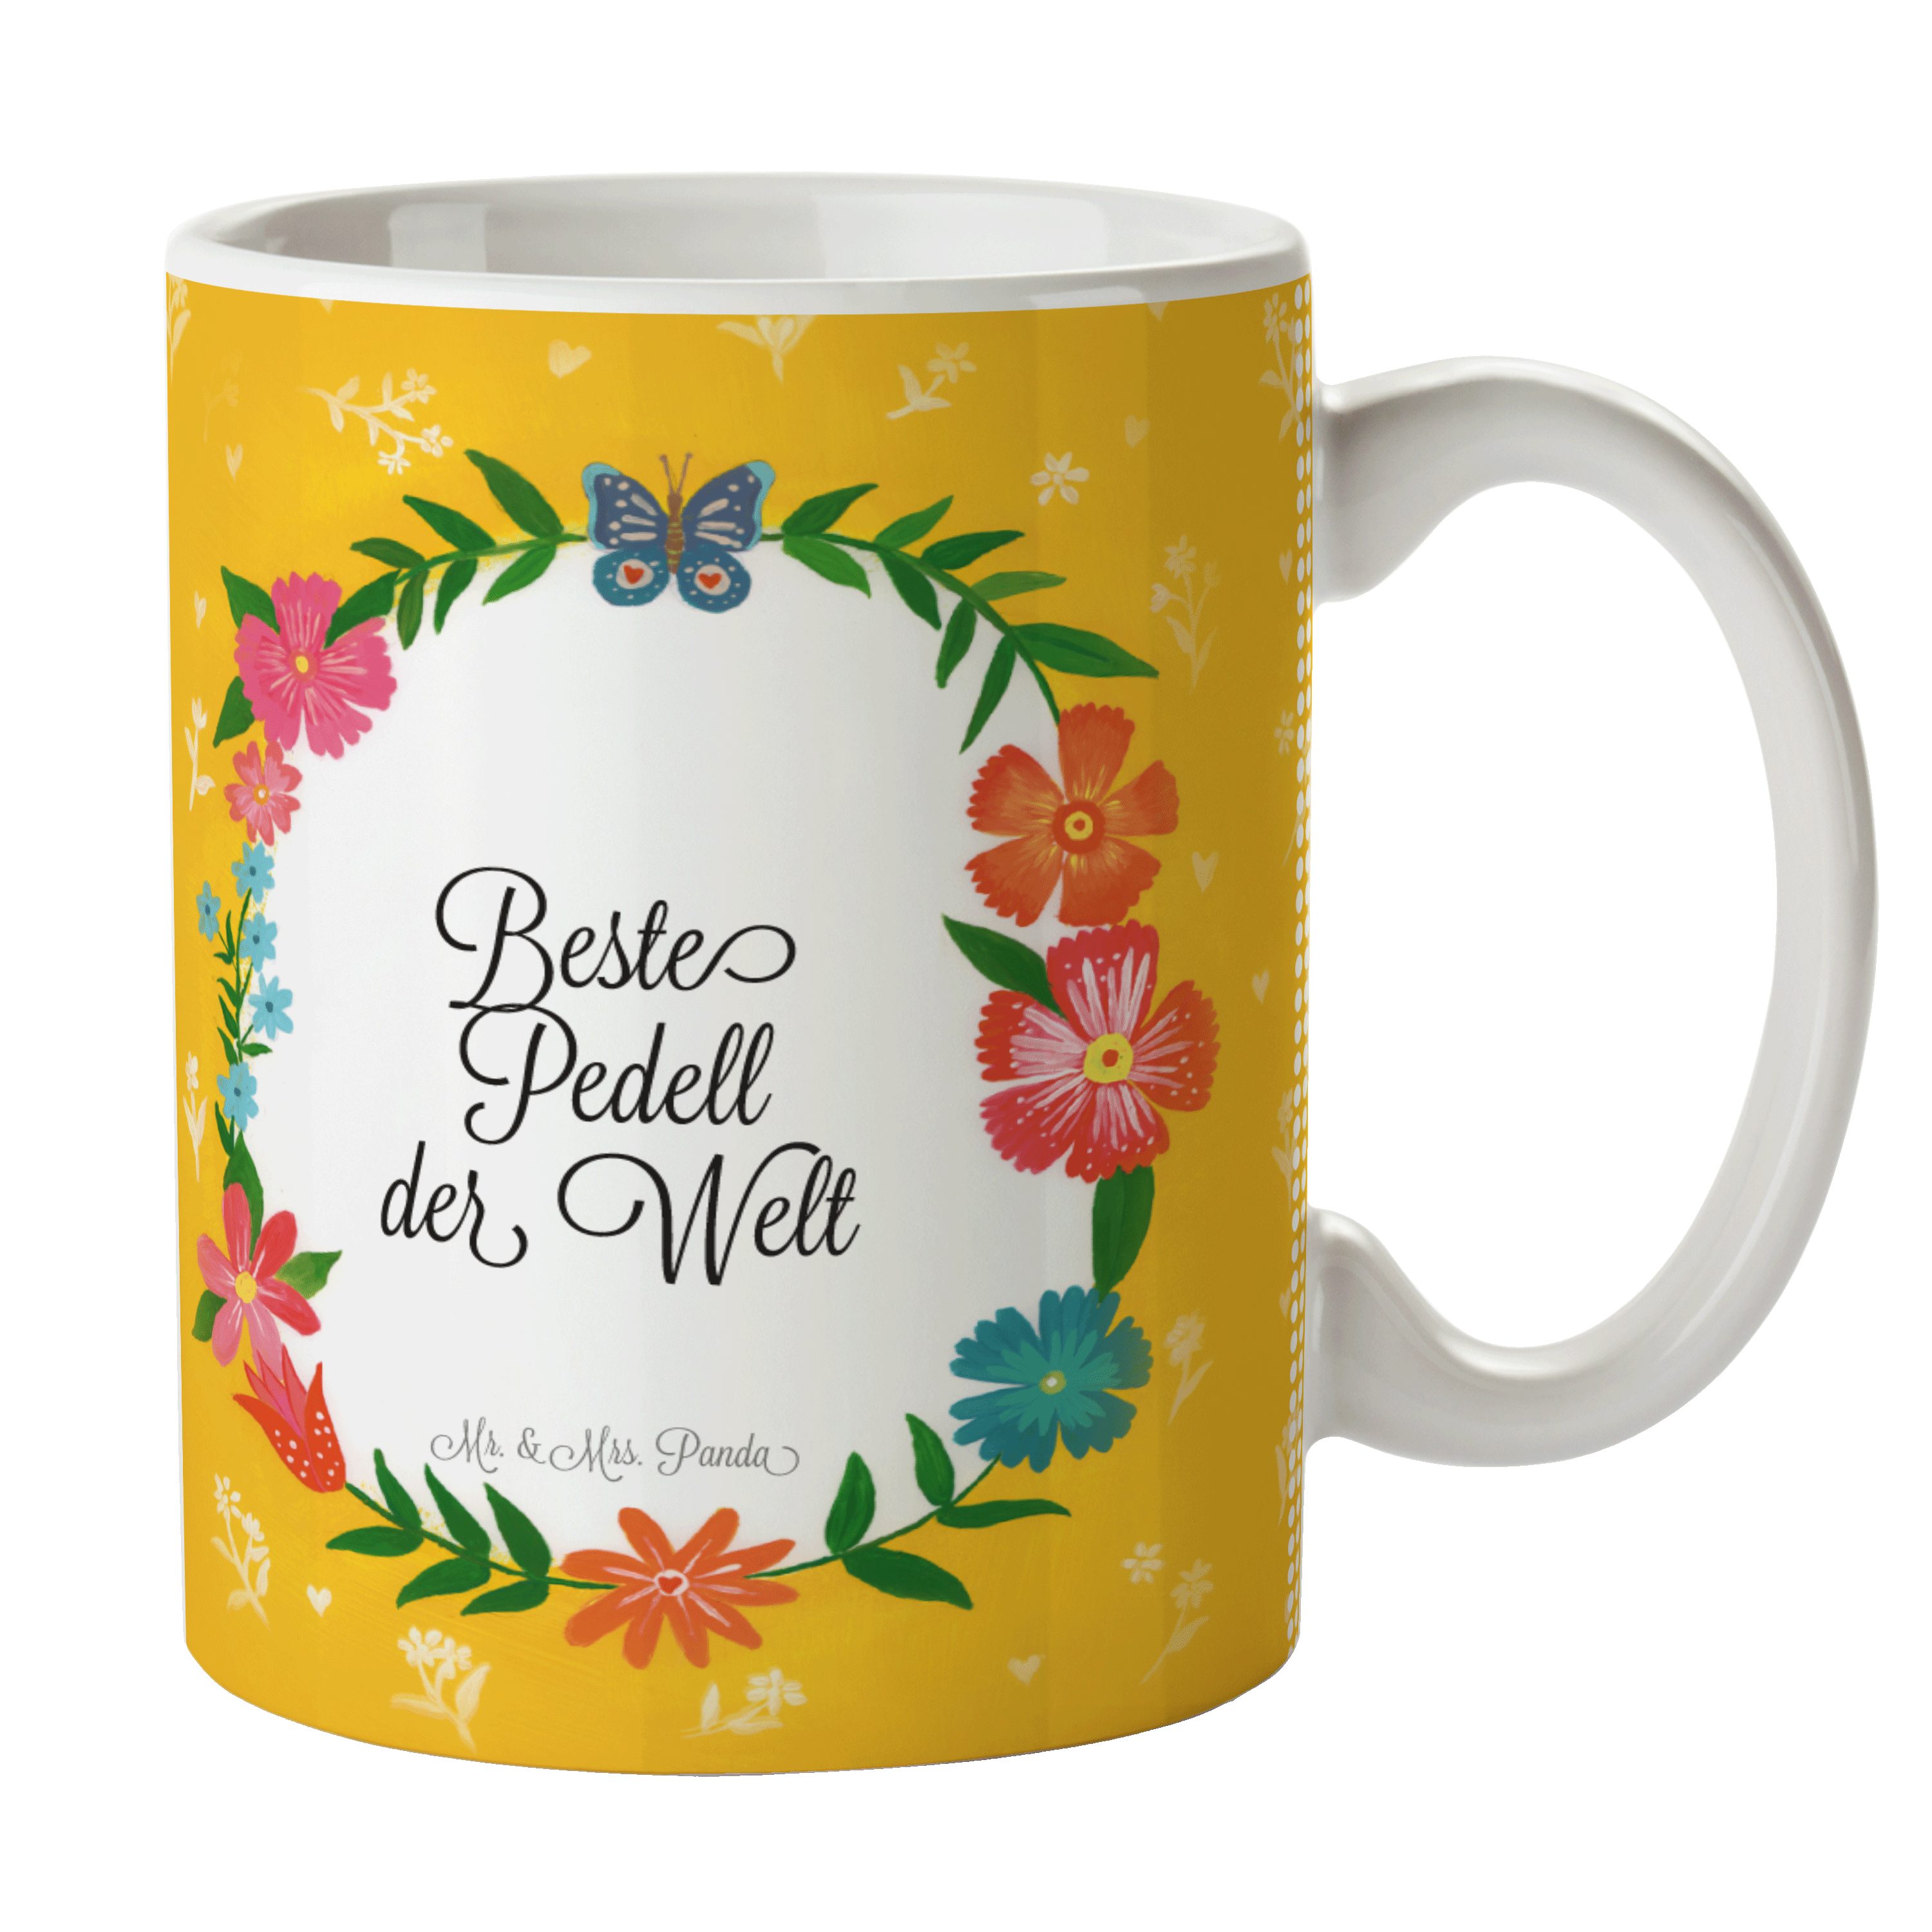 Mr. & Mrs. Panda Tasse Pedell - Geschenk, Abschied, Bachelor, Kaffeebecher, Geschenk Tasse, Keramik